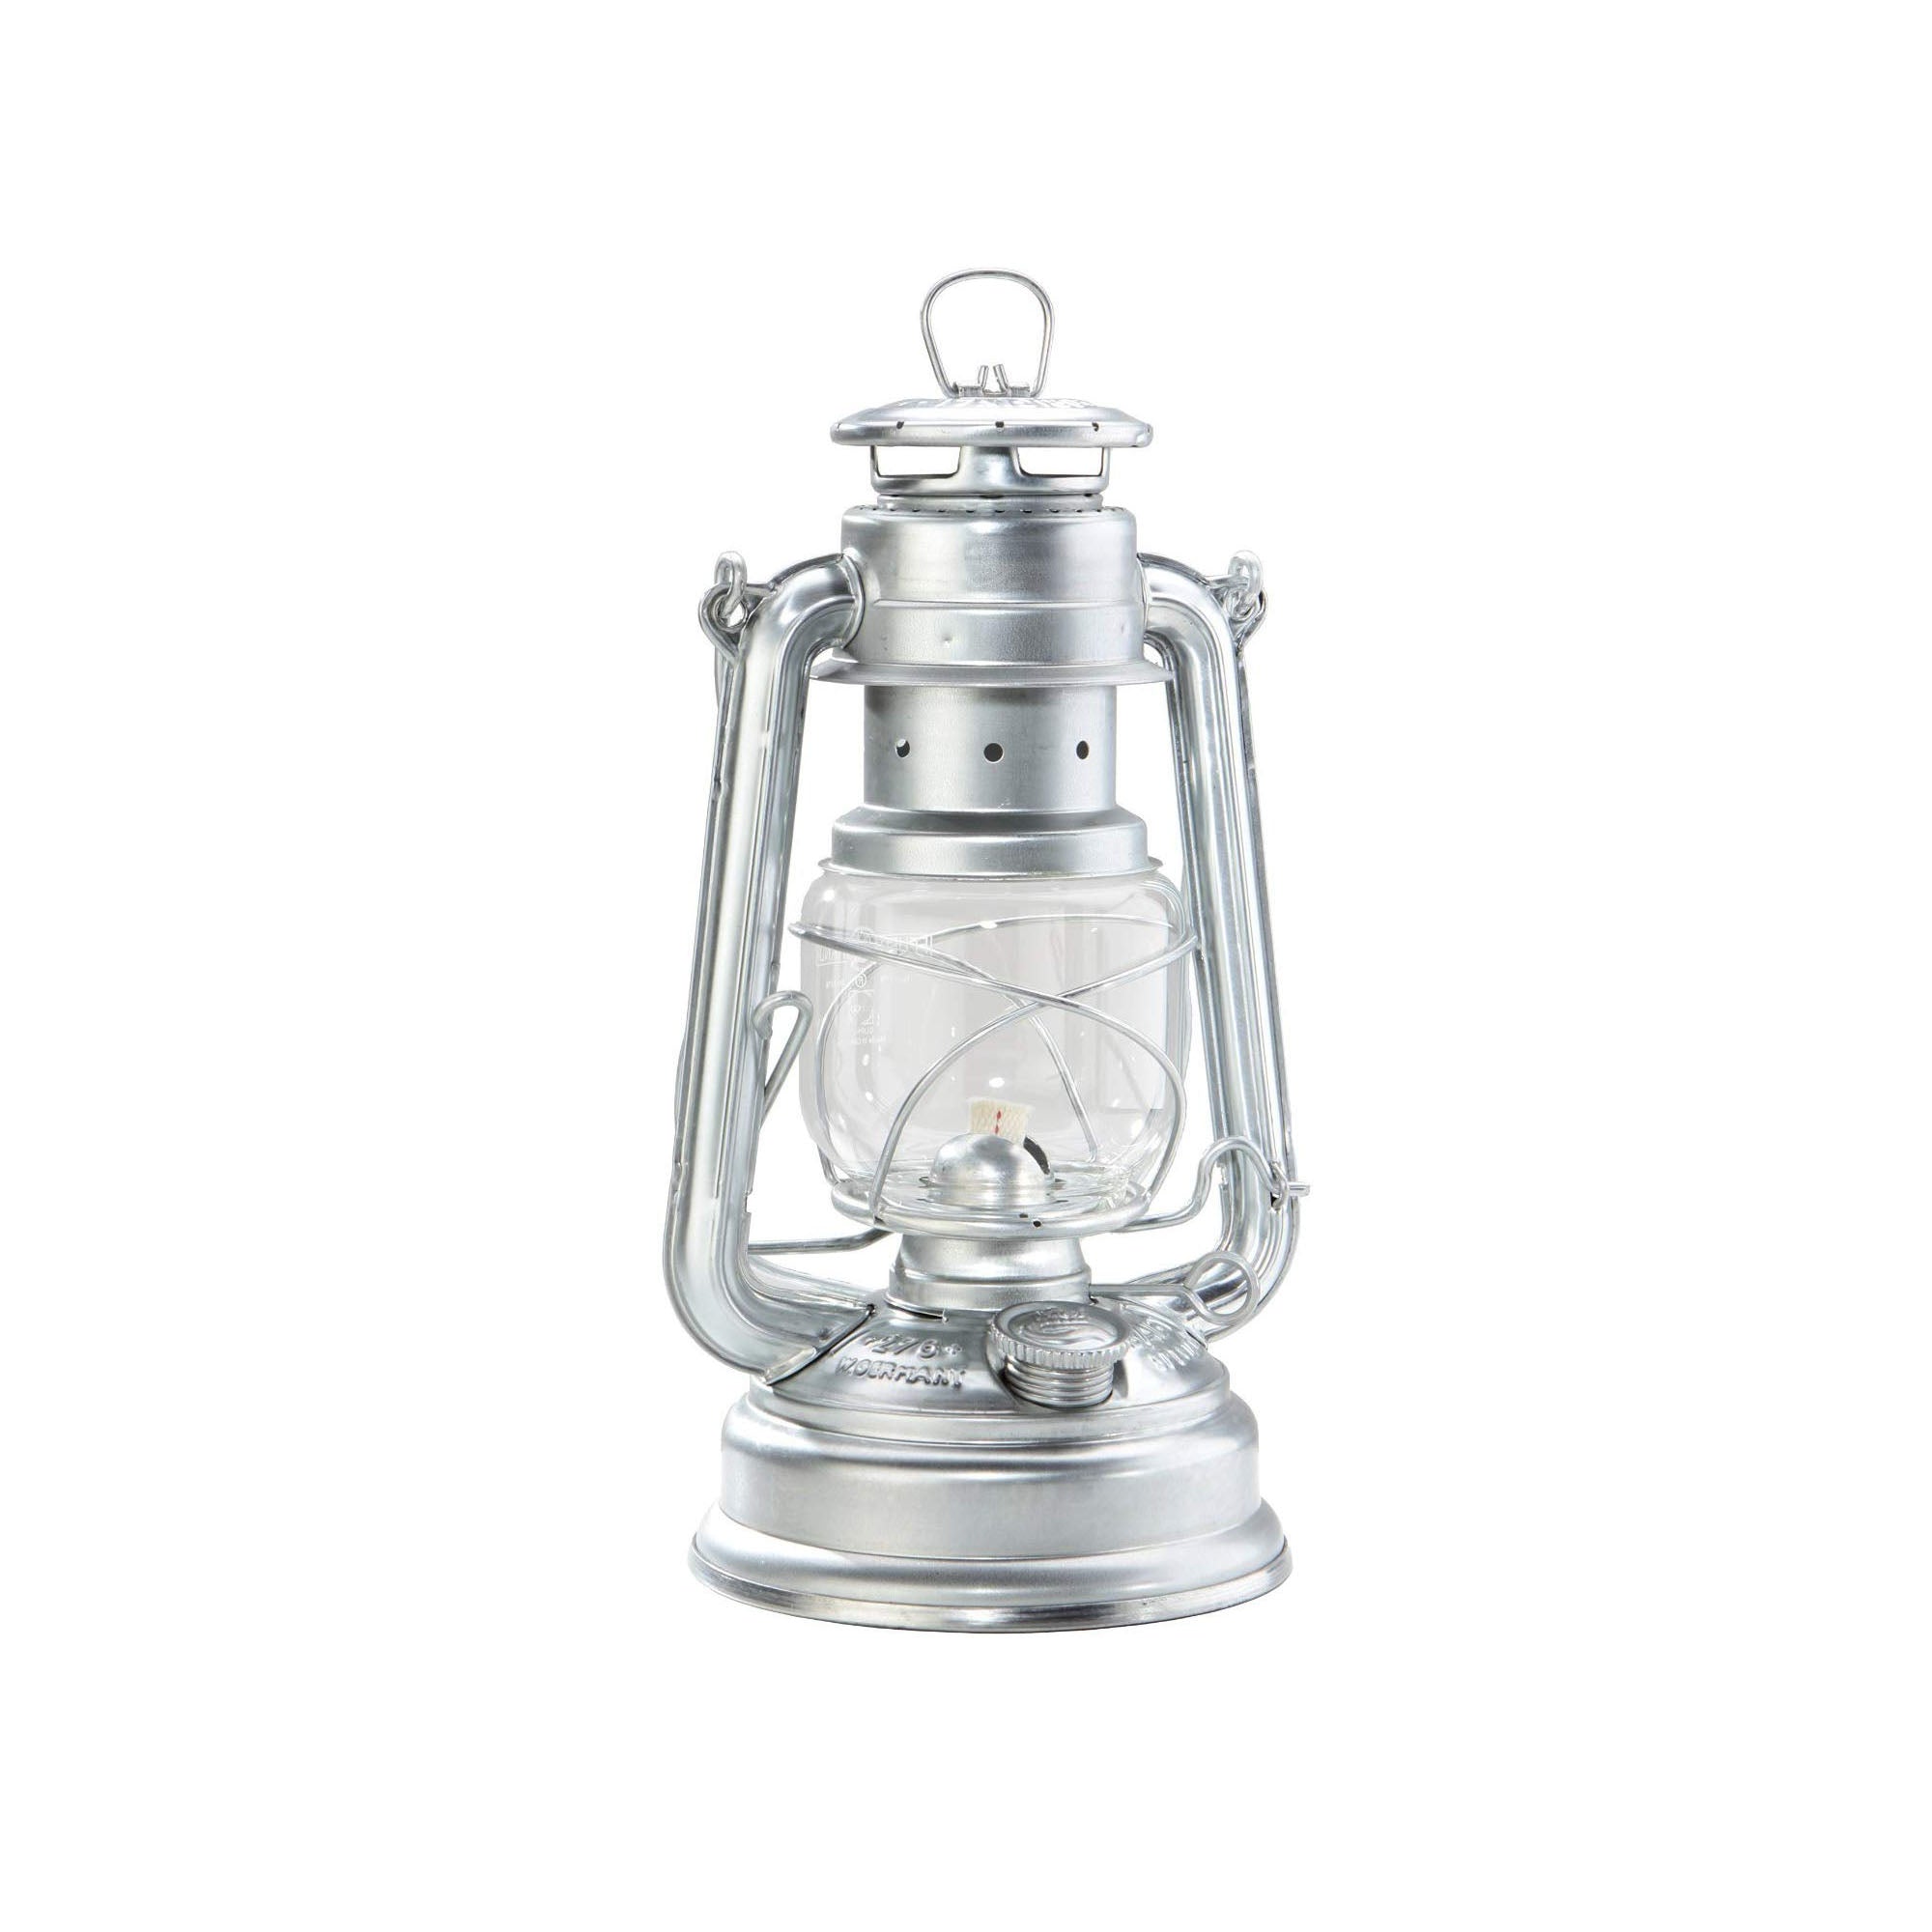 Paraffin Lamp / Lantern